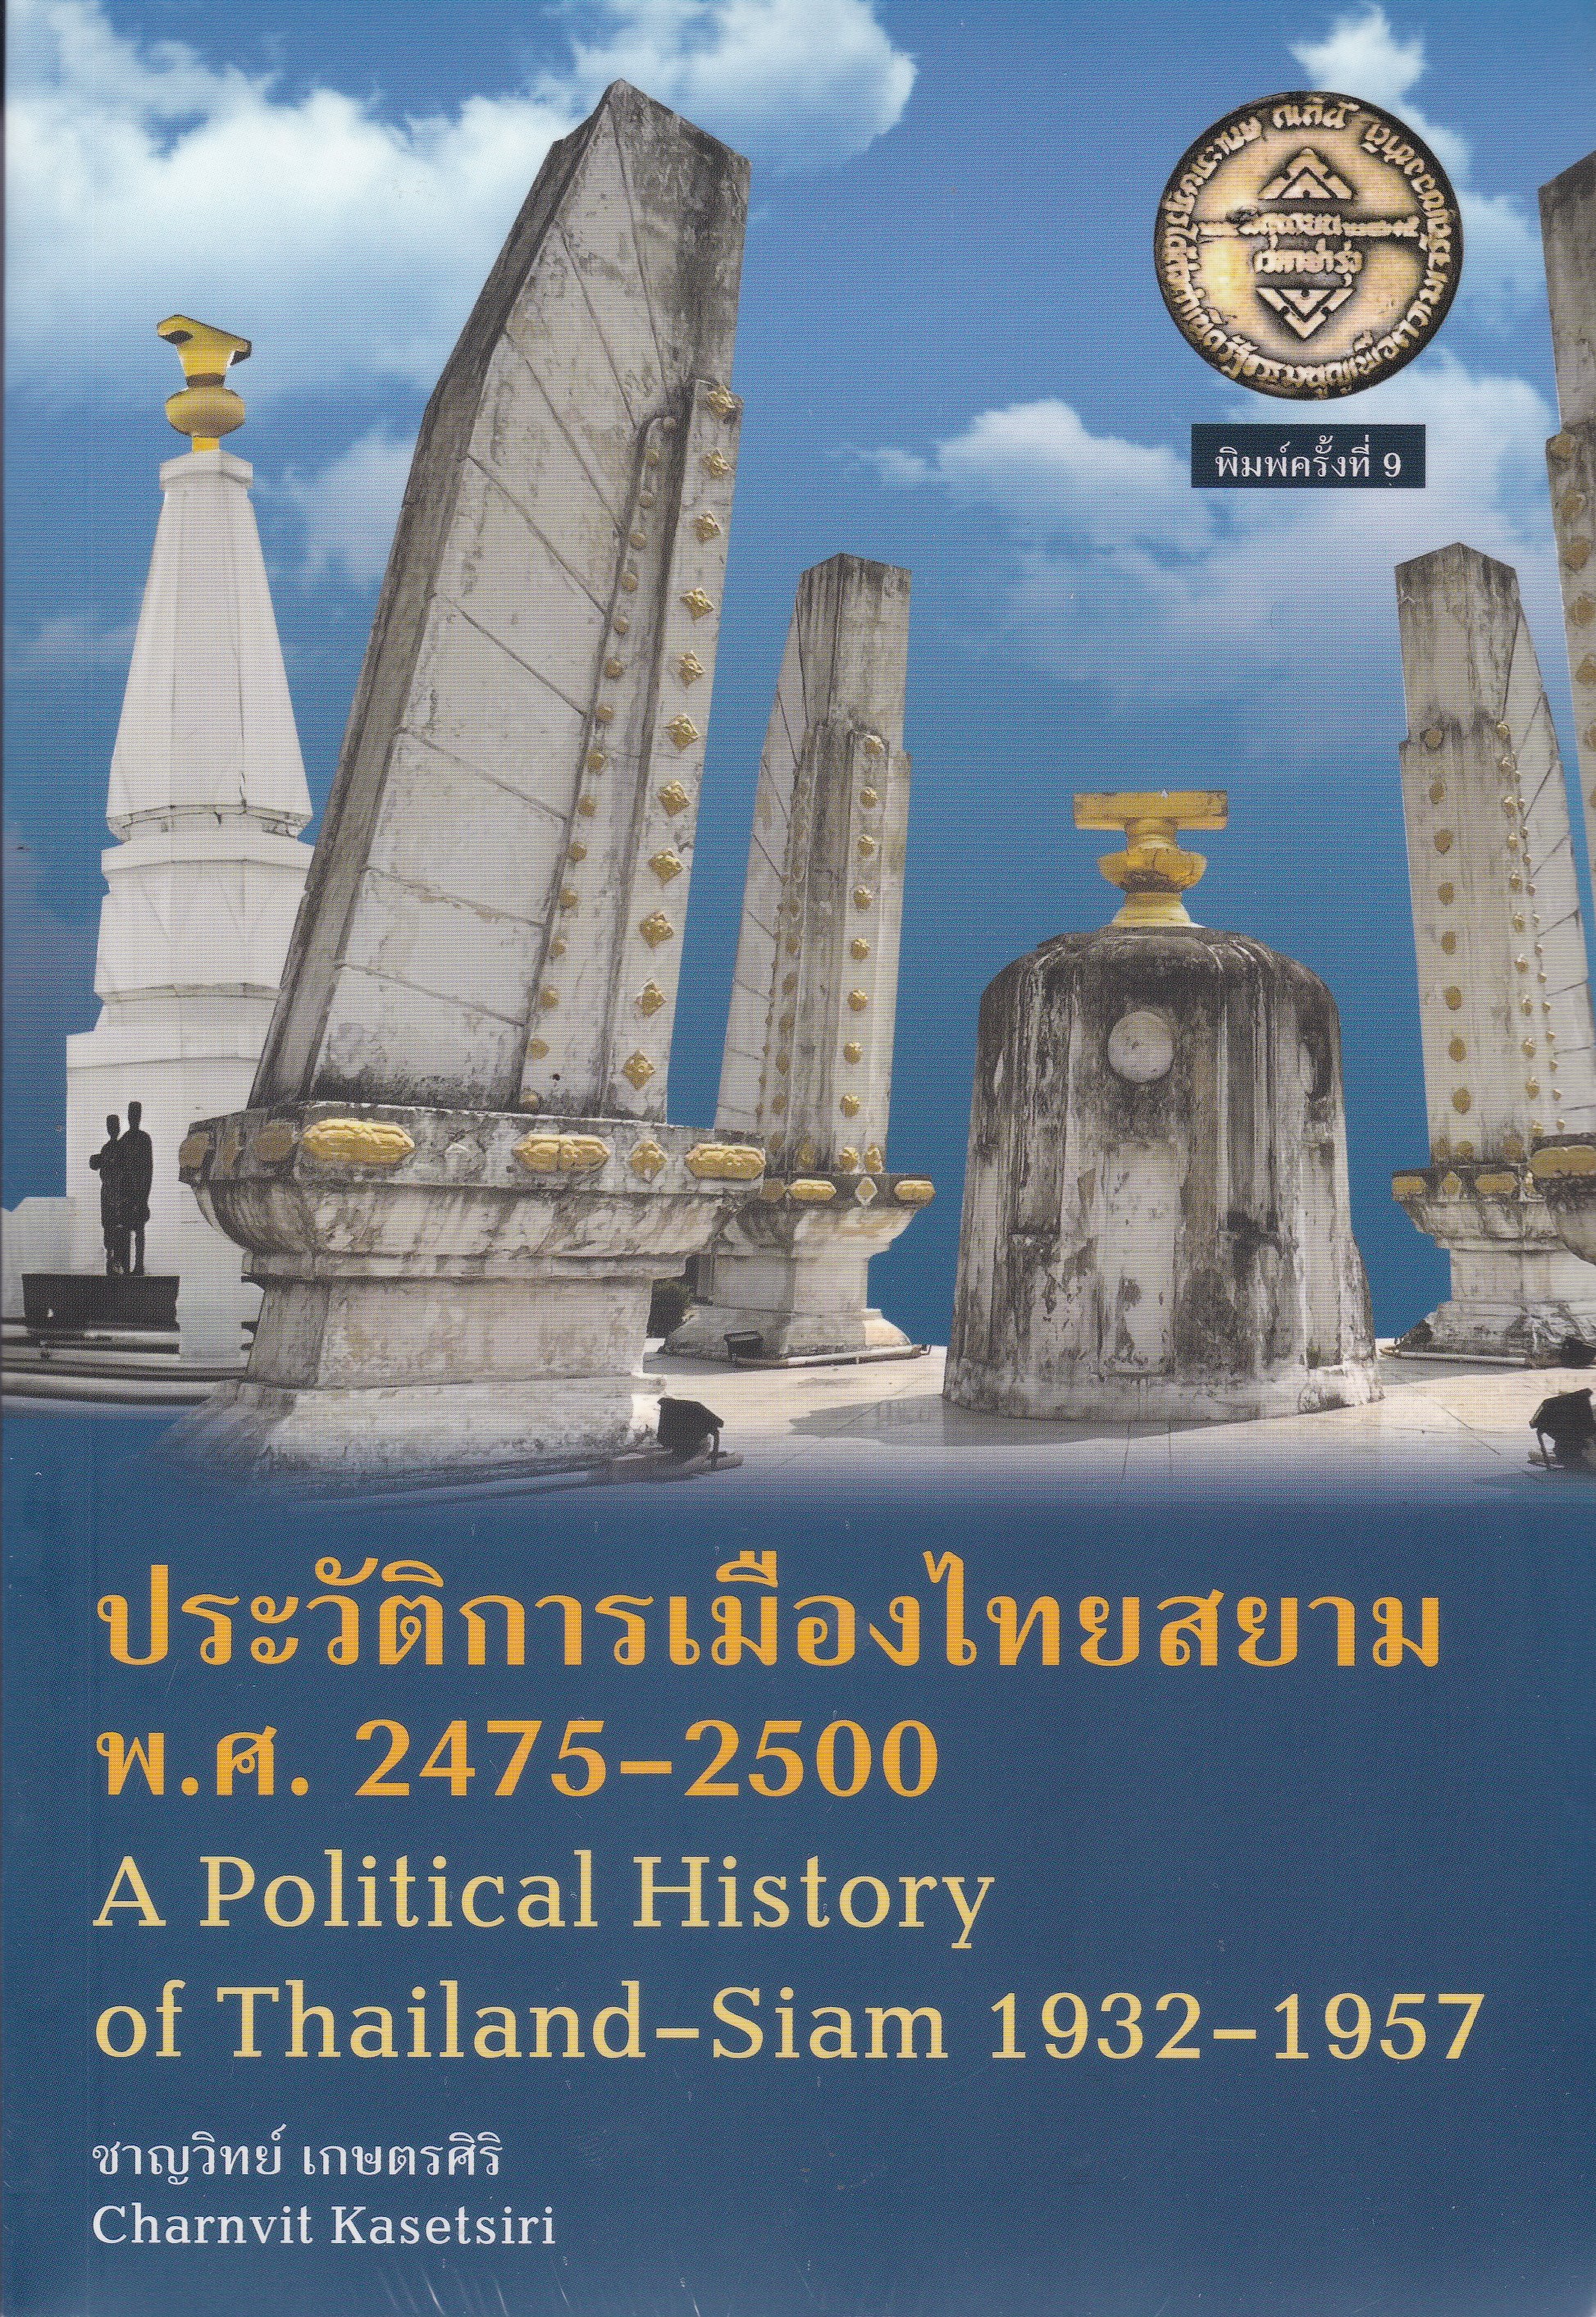 ประวัติการเมืองไทยสยาม พ.ศ. 2475-2500 (A POLITICAL HISTORY OF THAILAND-SIAM 1932-1957)